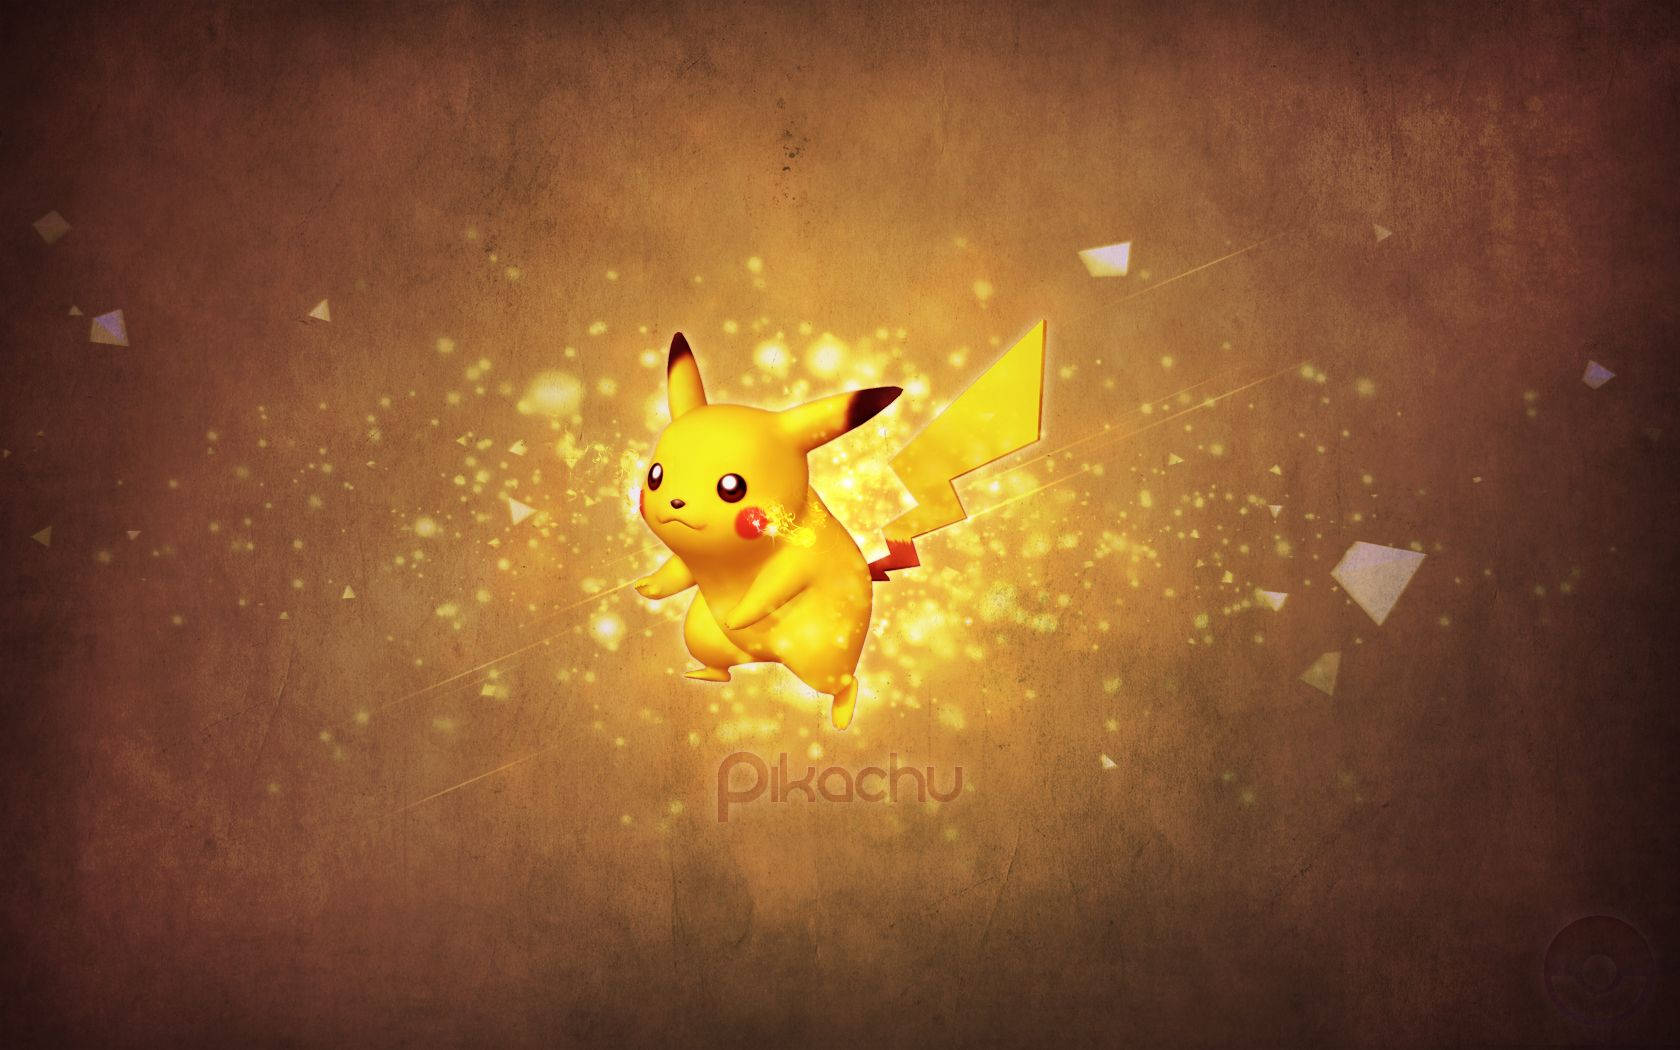 Pikachu 3d Starter Pokémon Wallpaper